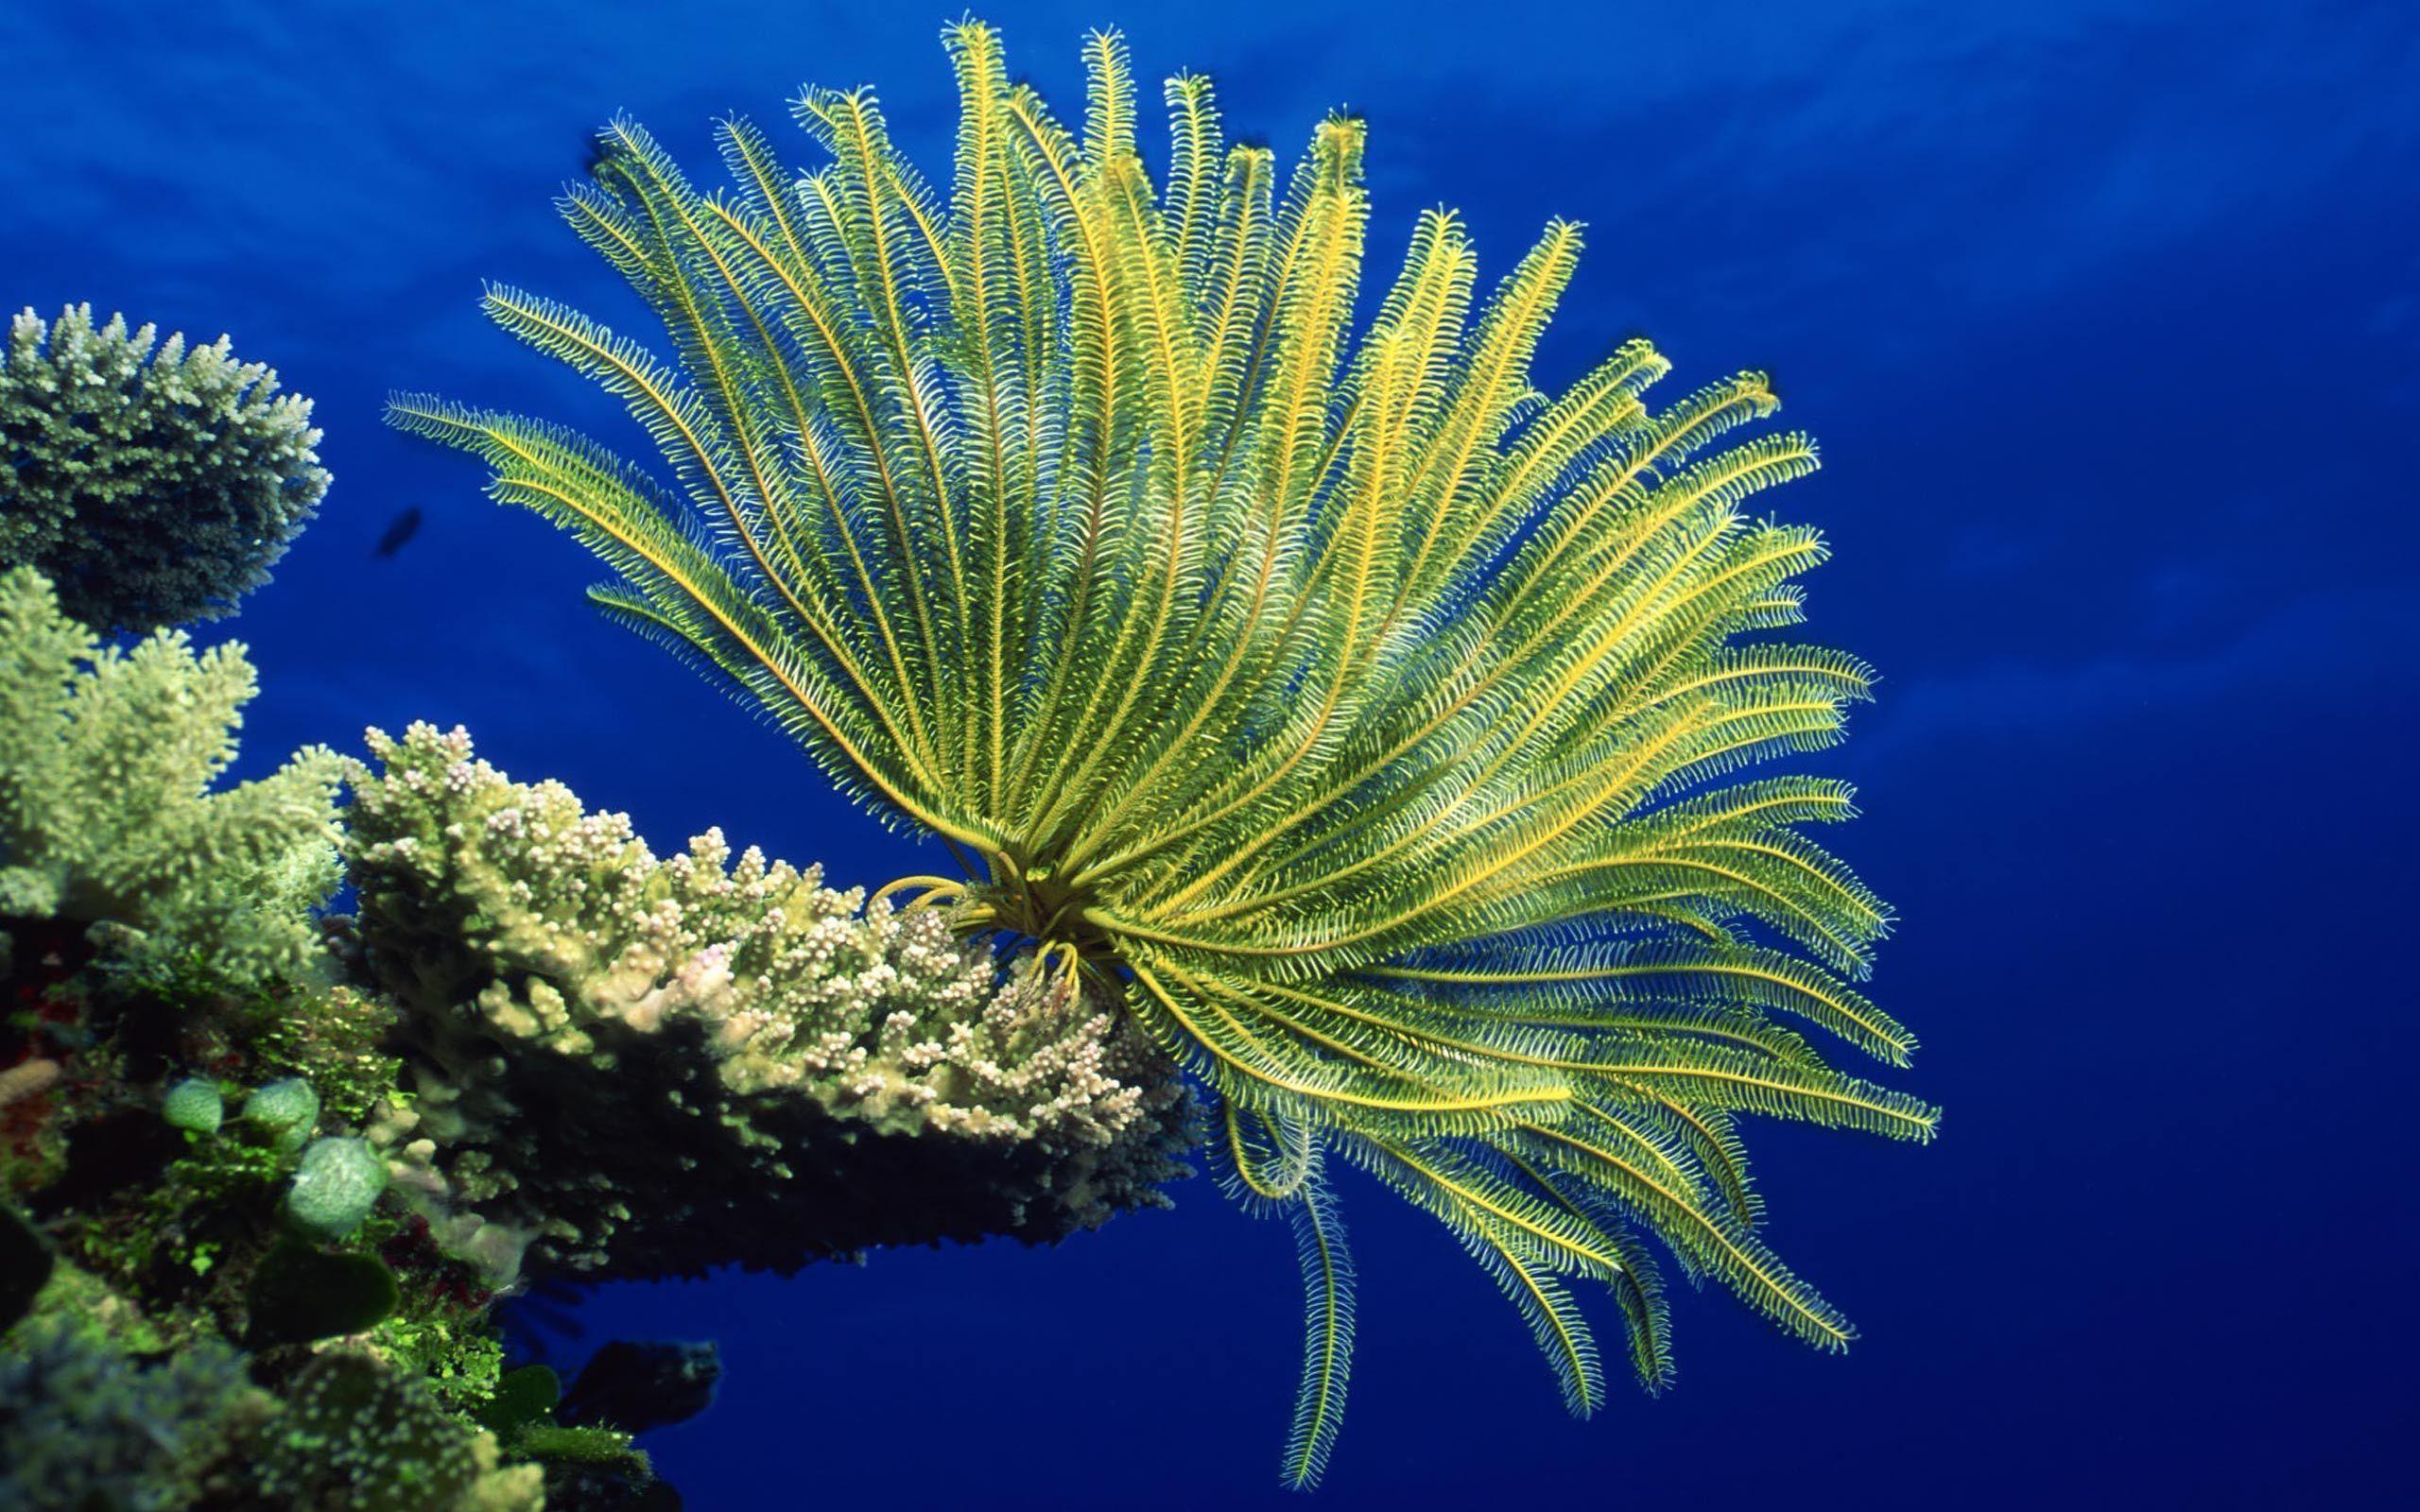 Desktop Wallpaper · Gallery · Animals · Sea anemones reef